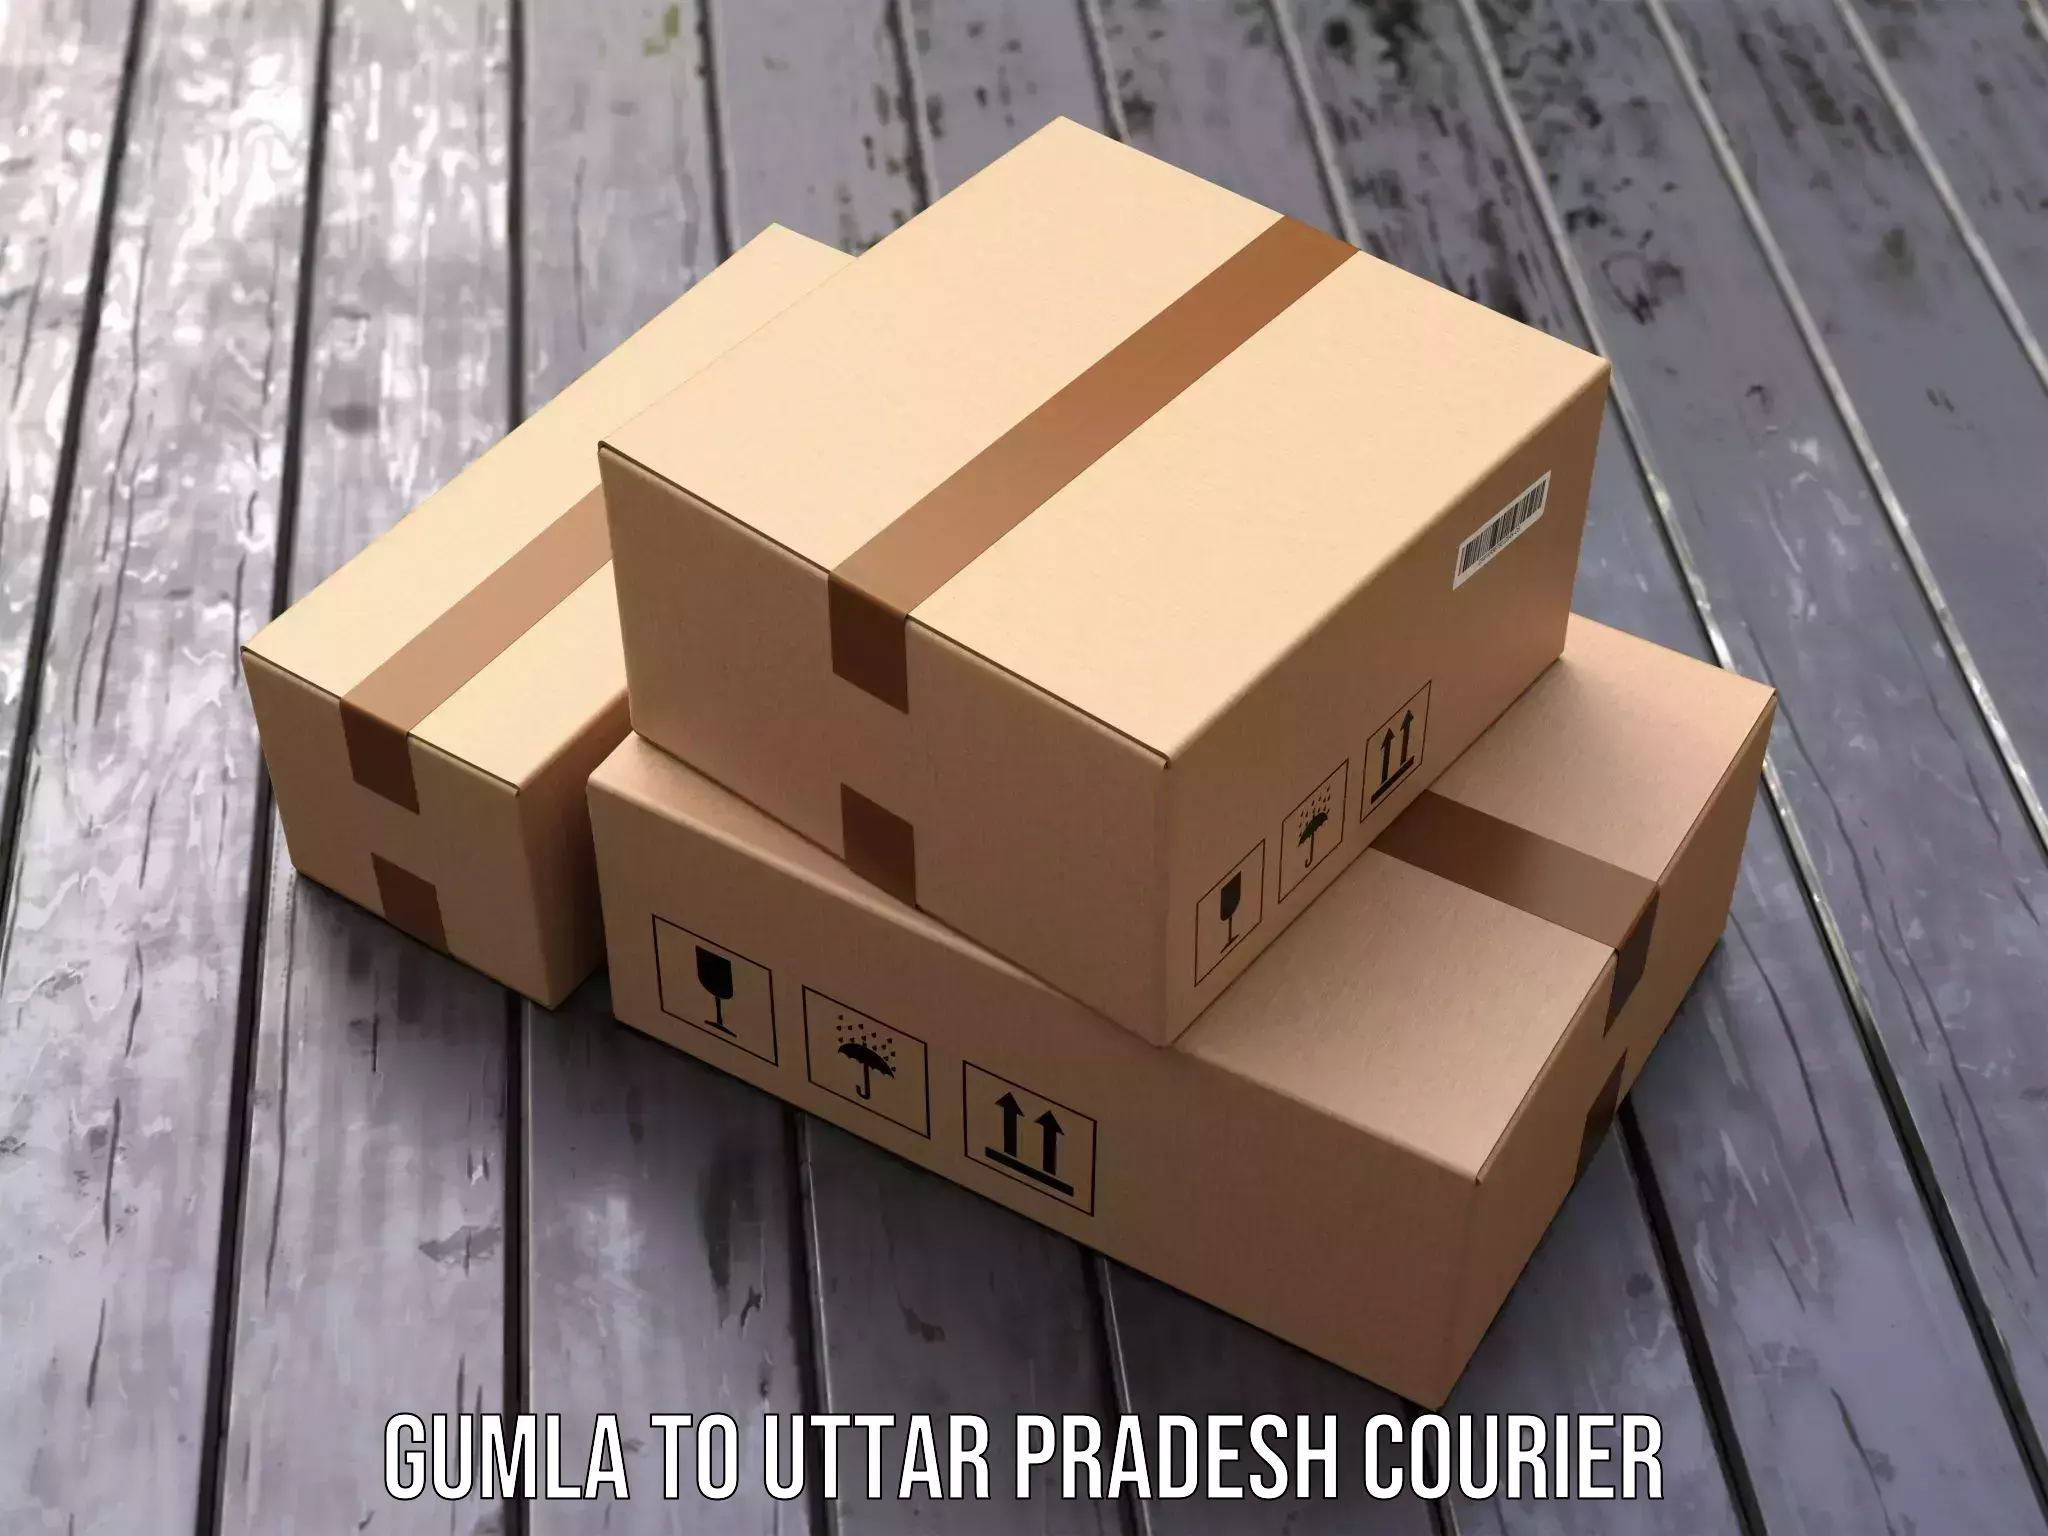 Multi-national courier services Gumla to Uttar Pradesh